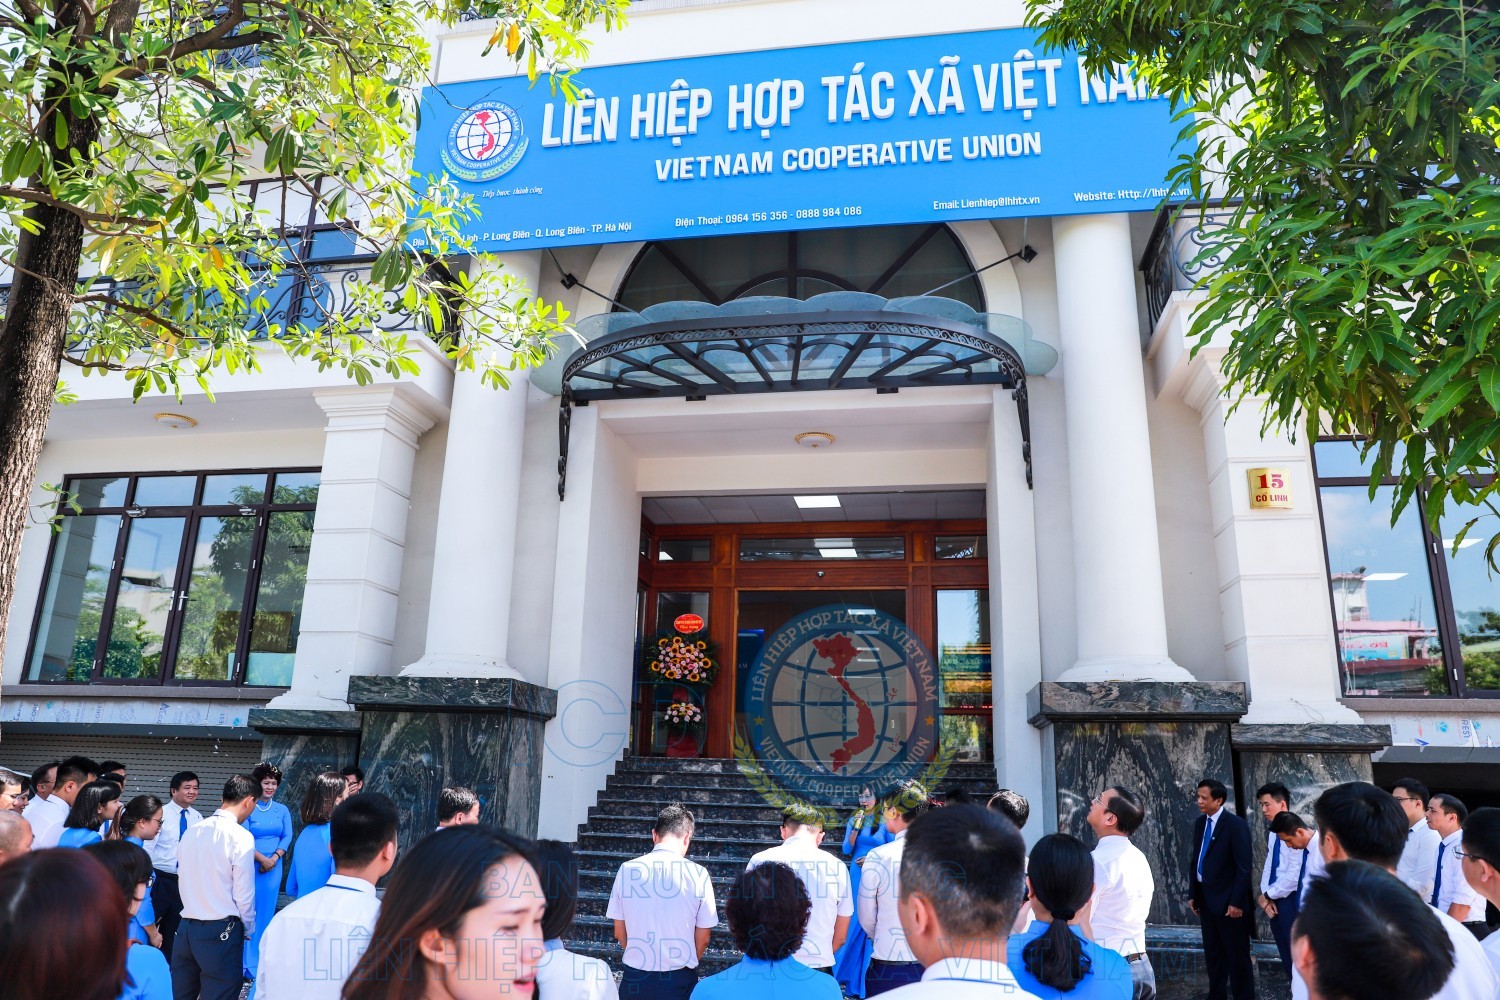 Trụ sở mới của Liên hiệp Hợp tác xã Việt Nam ở 15 Cổ Linh, Long Biên, Hà Nội